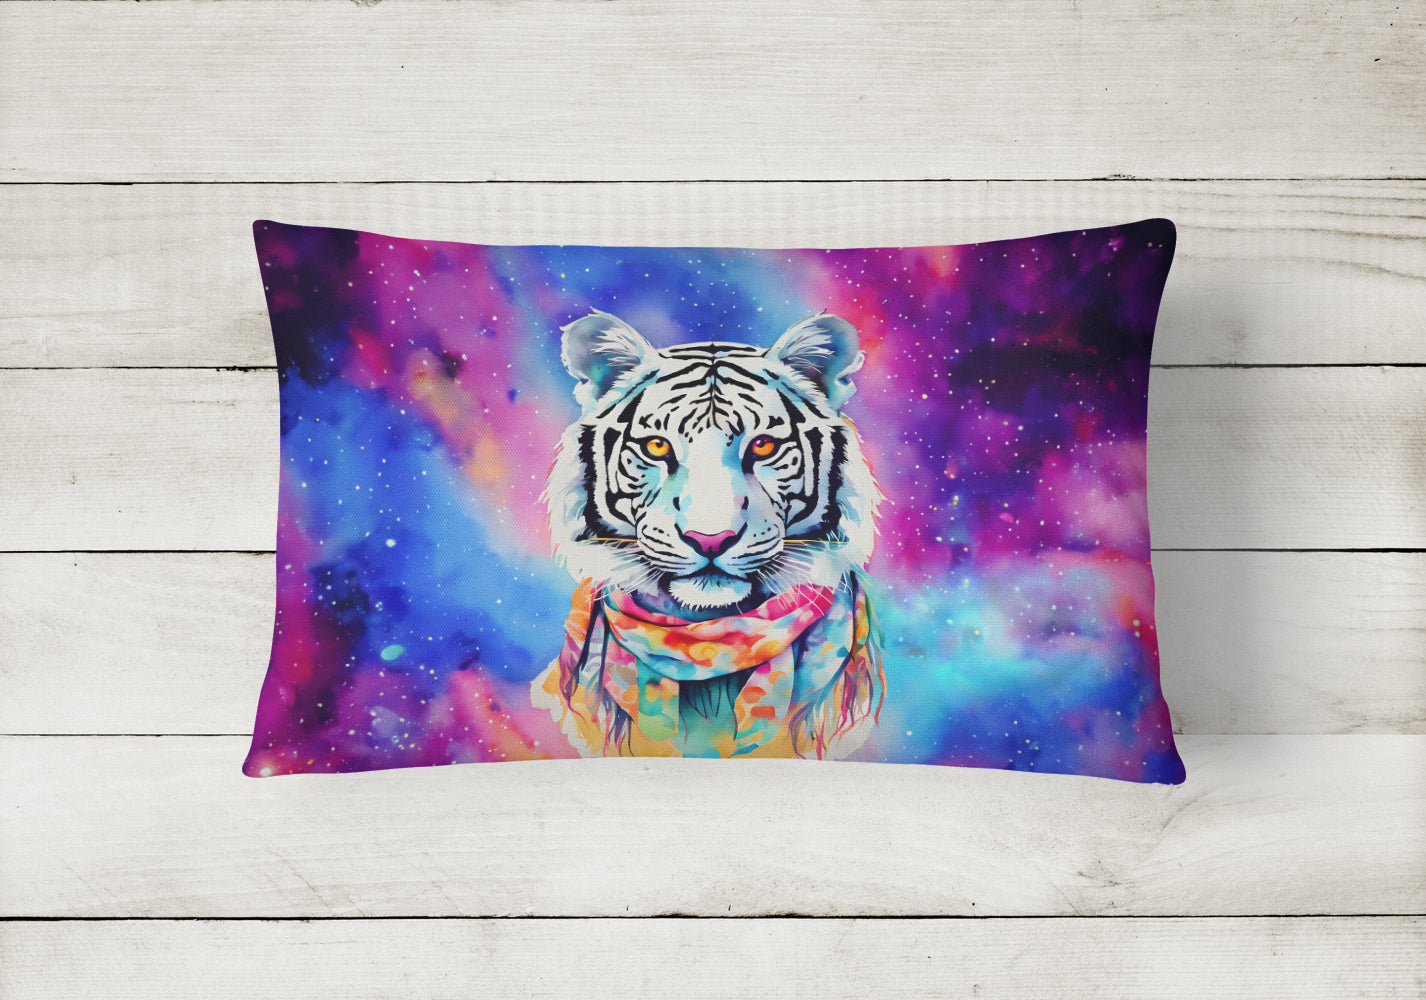 Buy this Hippie Animal White Tiger Throw Pillow